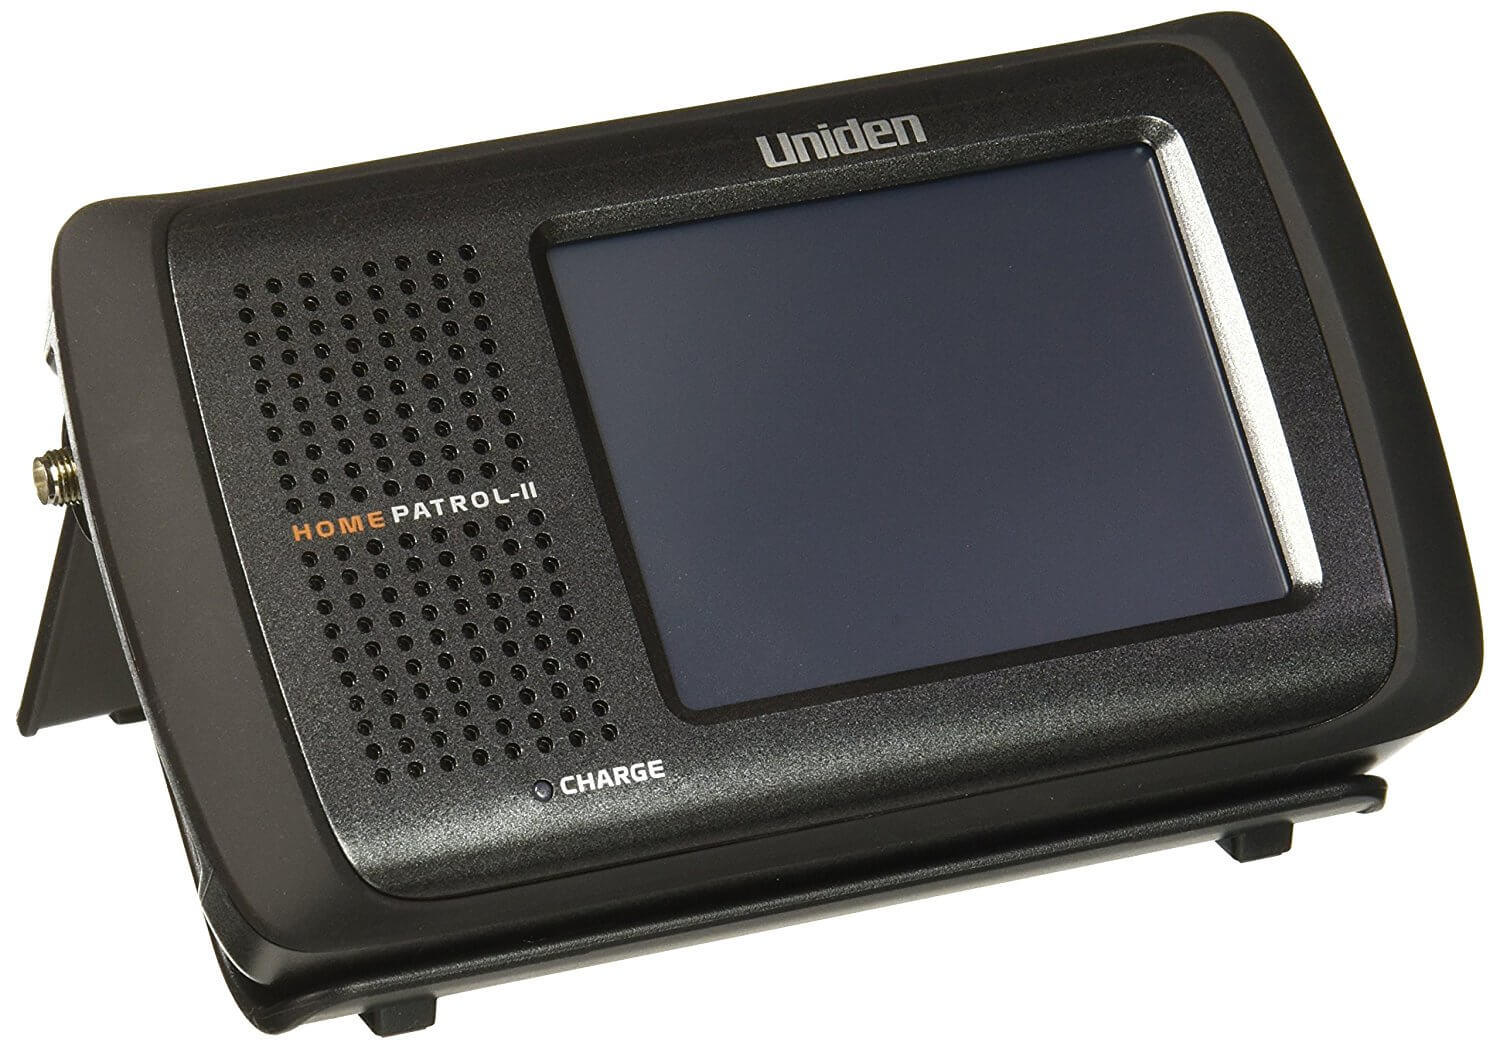 Uniden HomePatrol II TouchScreen Digital Scanner